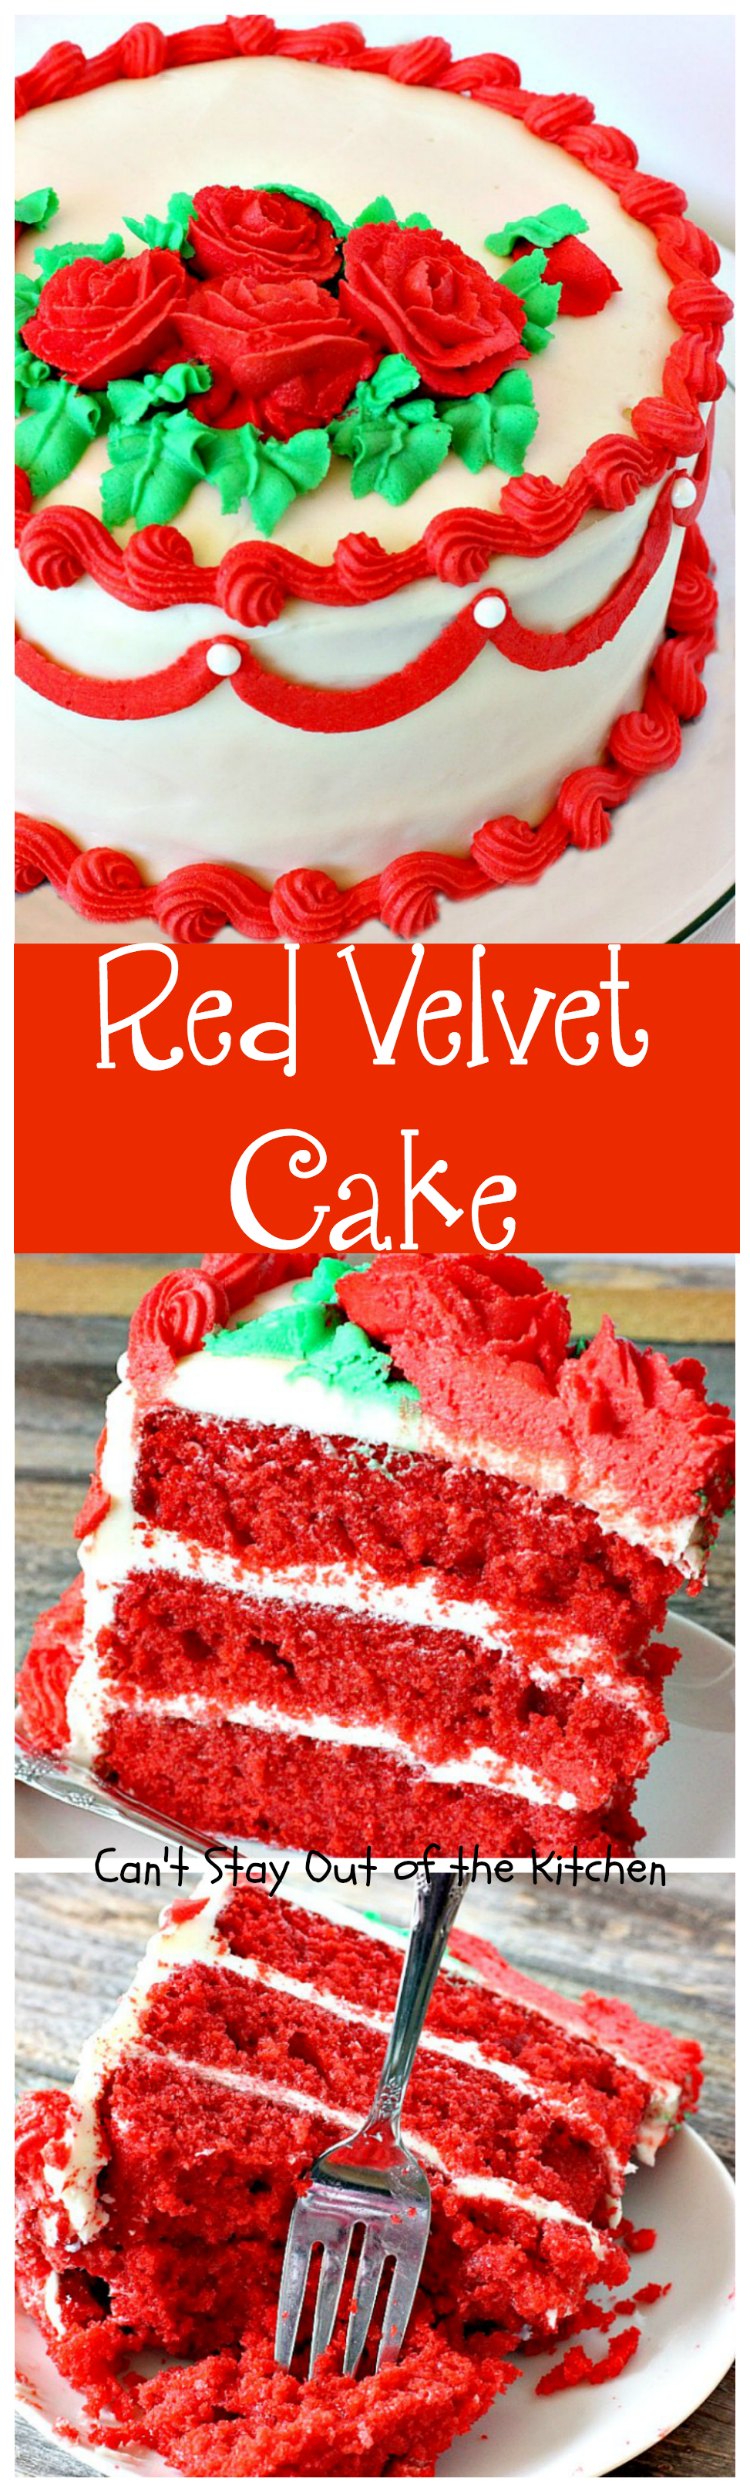 Odlums Red Velvet Cake - prowizdesign